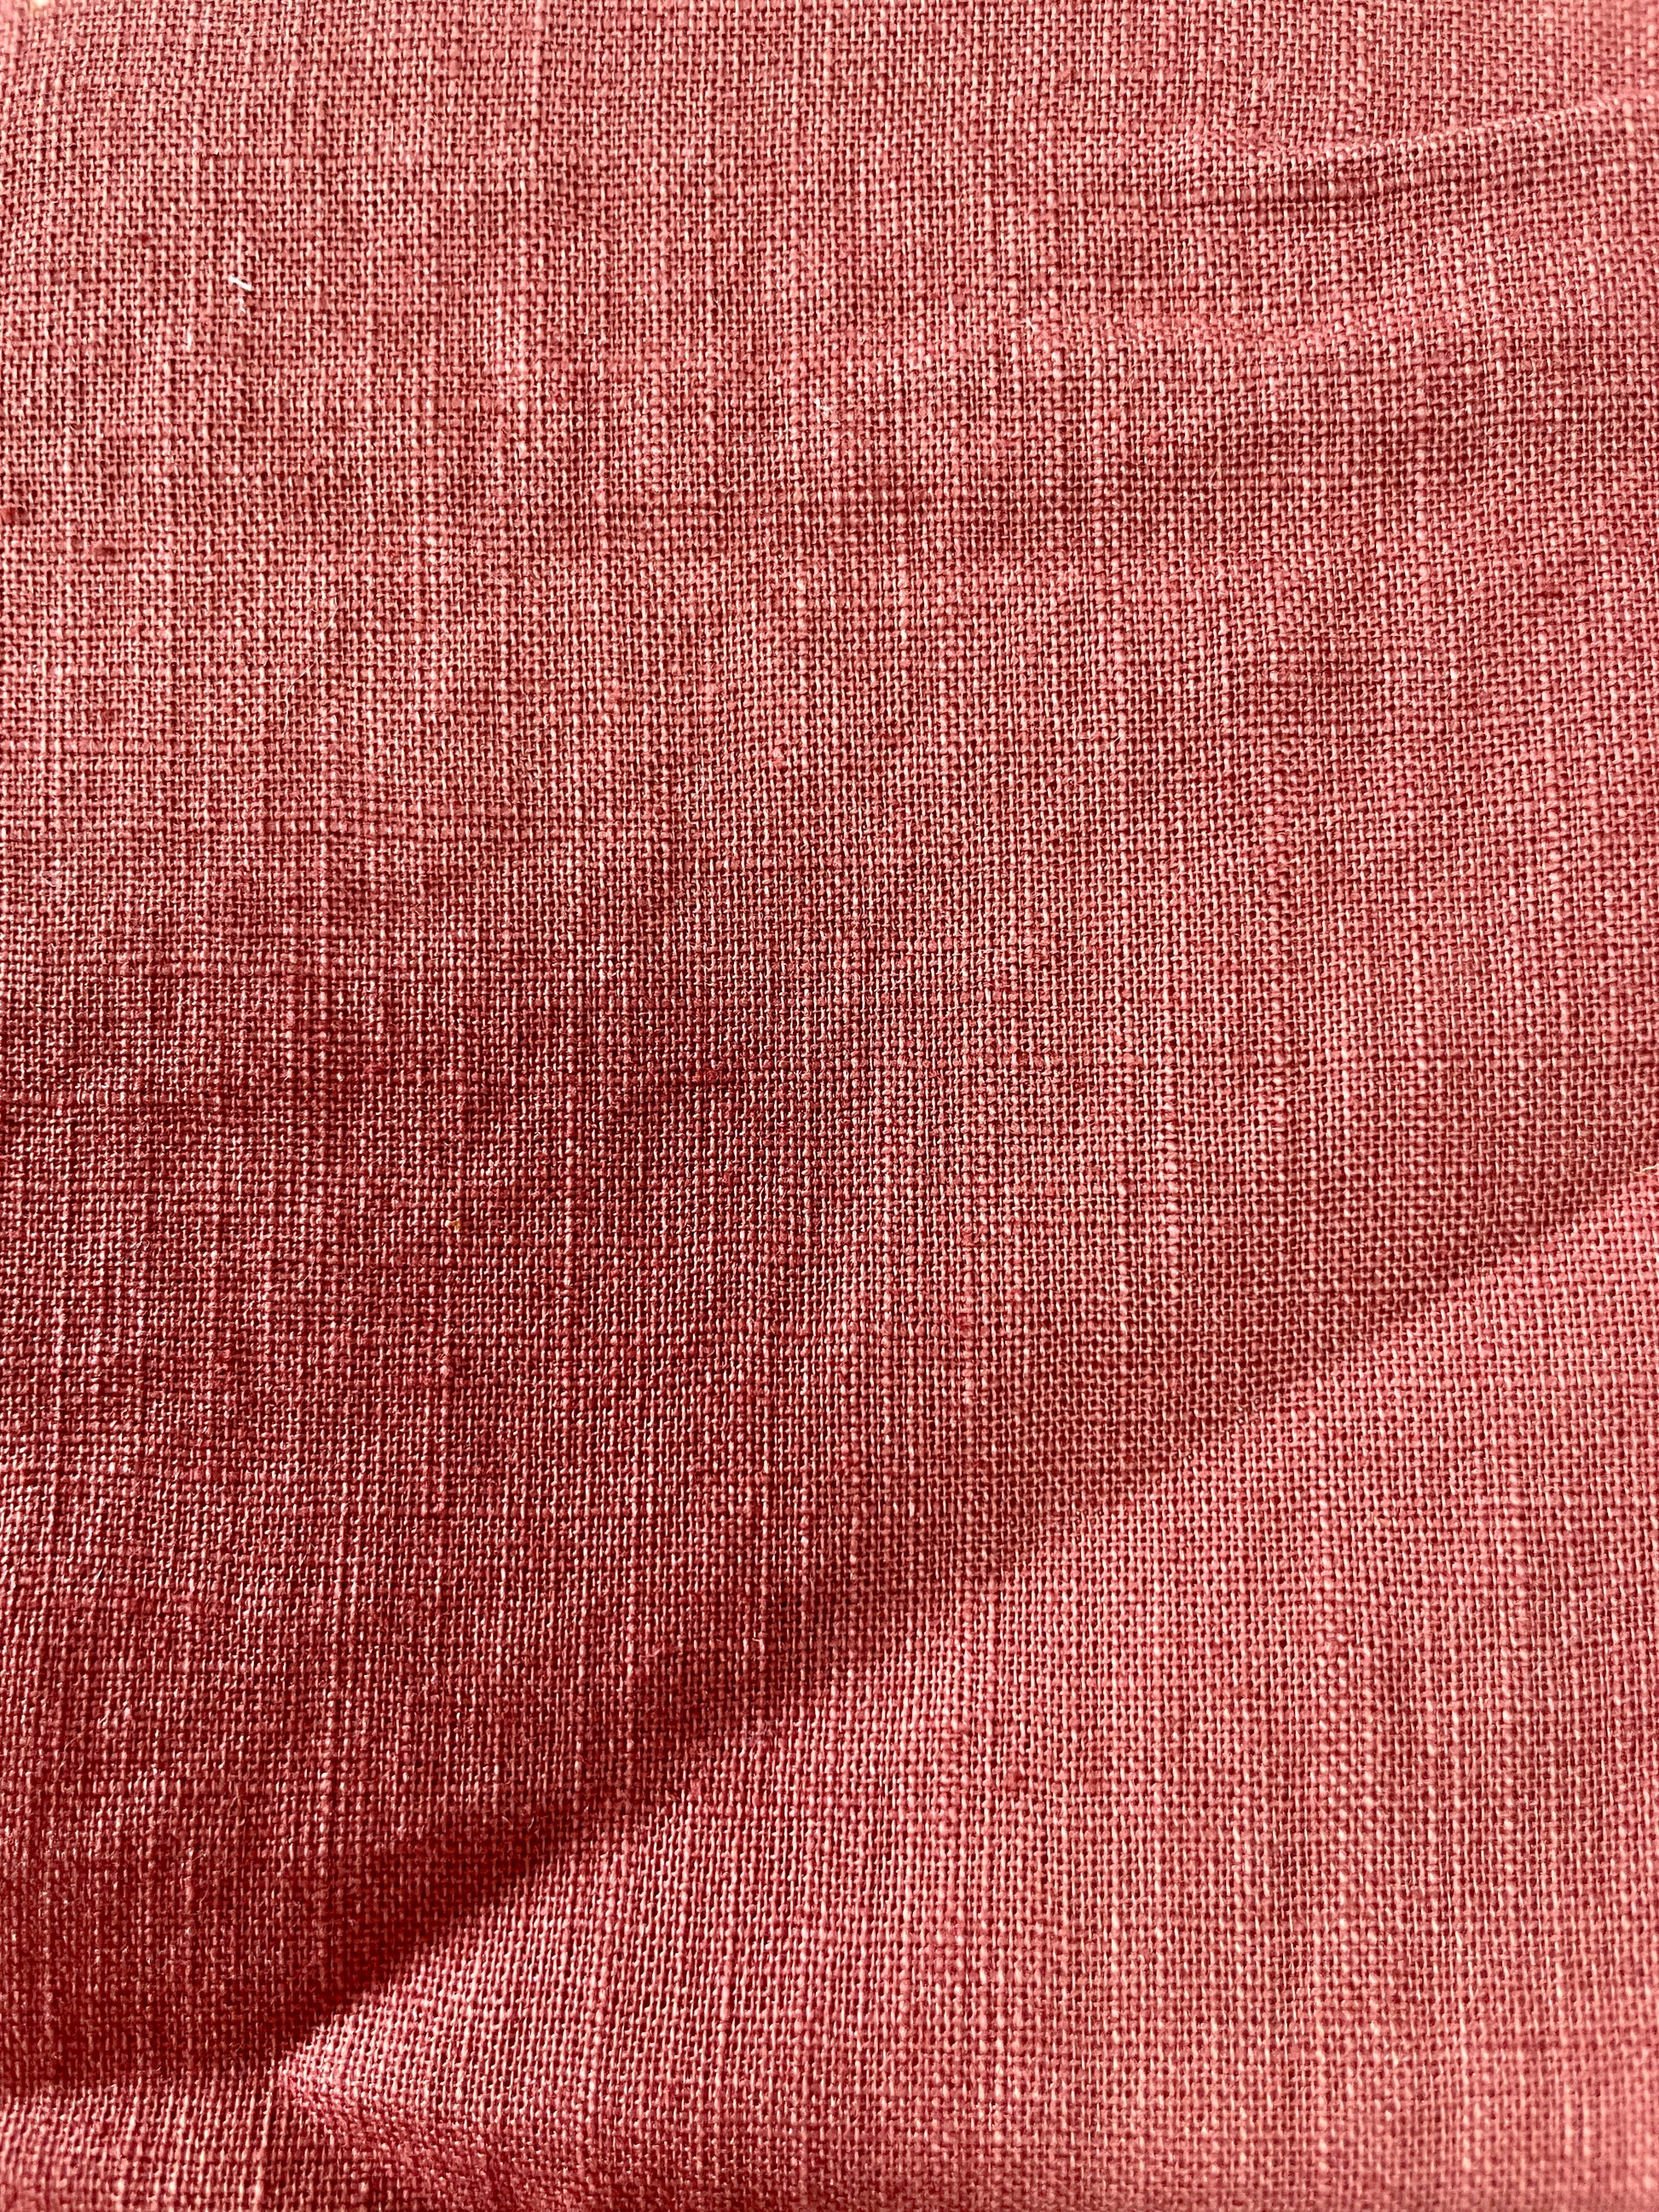 190g Washed Linen Cotton Blended Fabric - Natasha Fabric